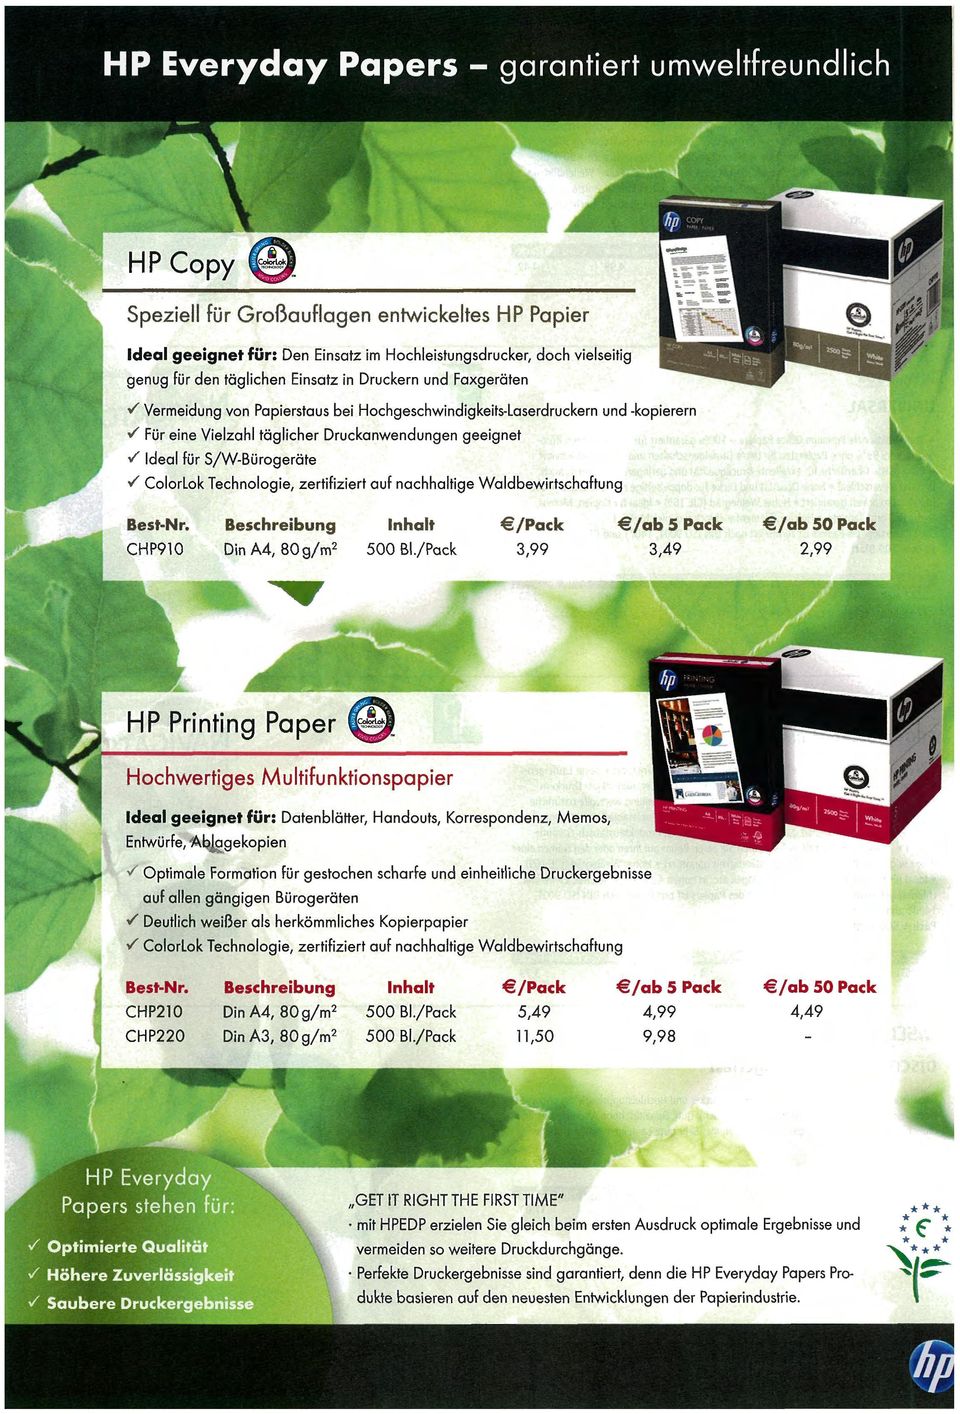 / Colorlok Technologie, zertifiziert auf nachhaltige Waldbewirtschaftung Best-Nr. CHP910 Beschreibung Din A4, 80g/m 2 Inhalt 500 BI.